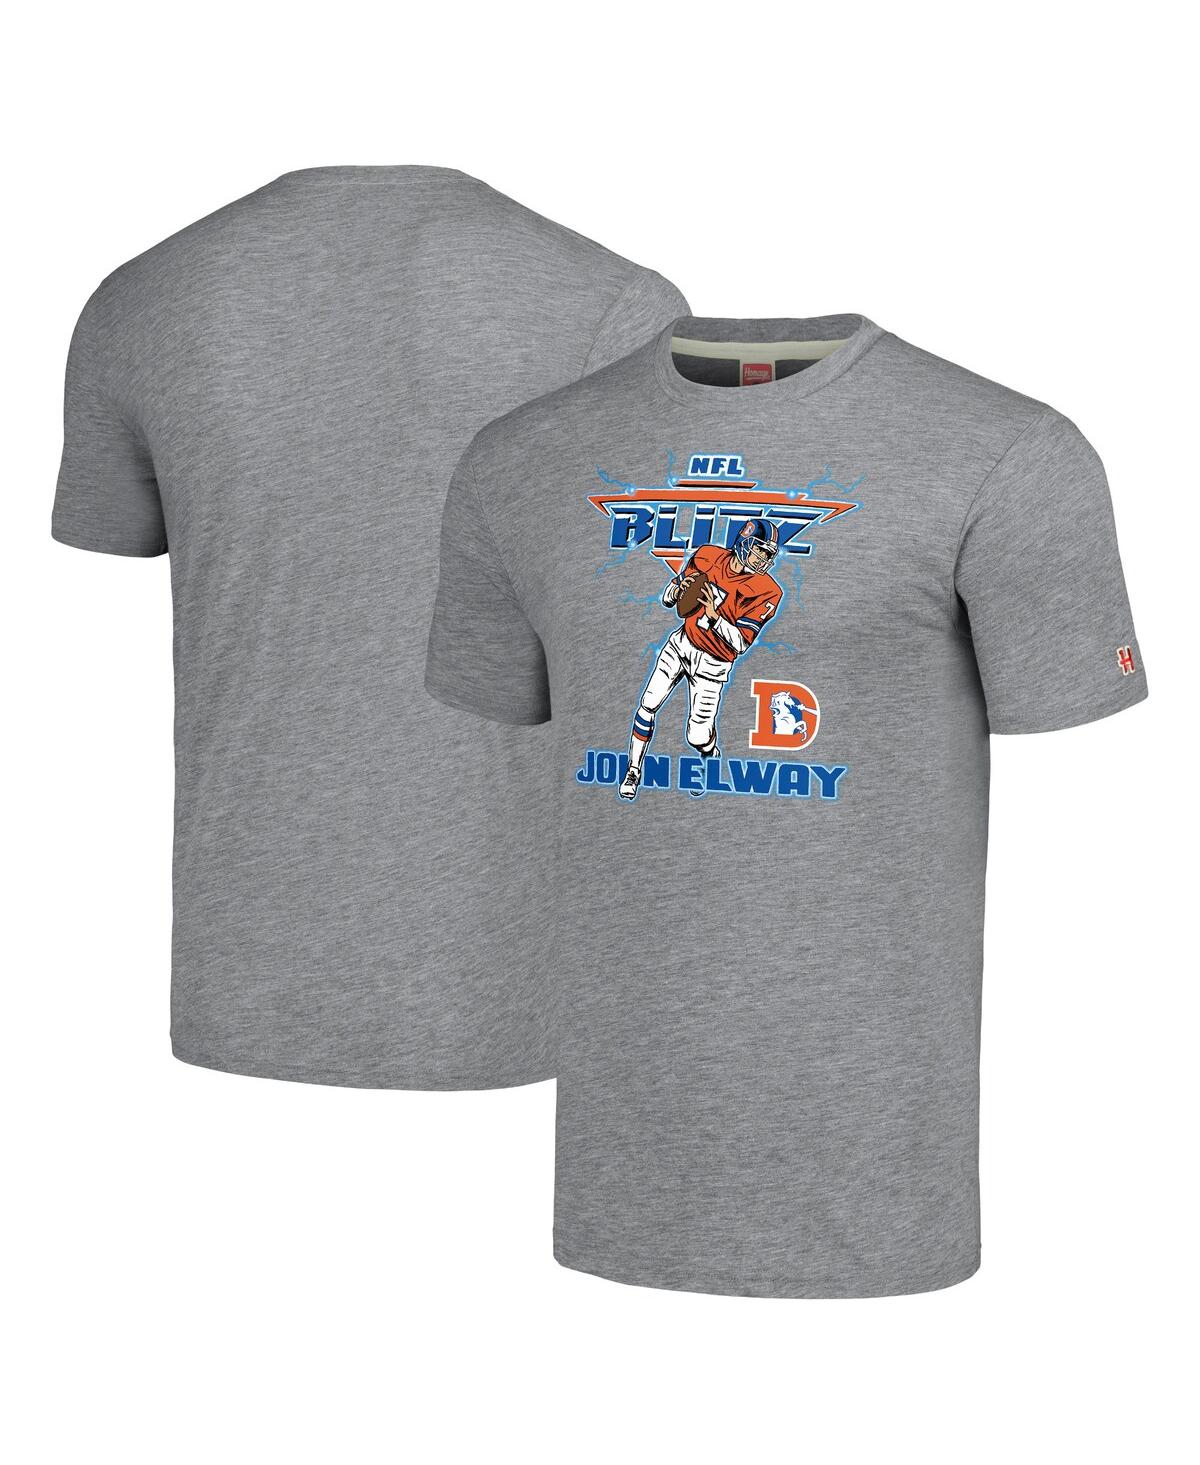 Men's Homage John Elway Gray Denver Broncos Nfl Blitz Retired Player Tri-Blend T-shirt - Gray